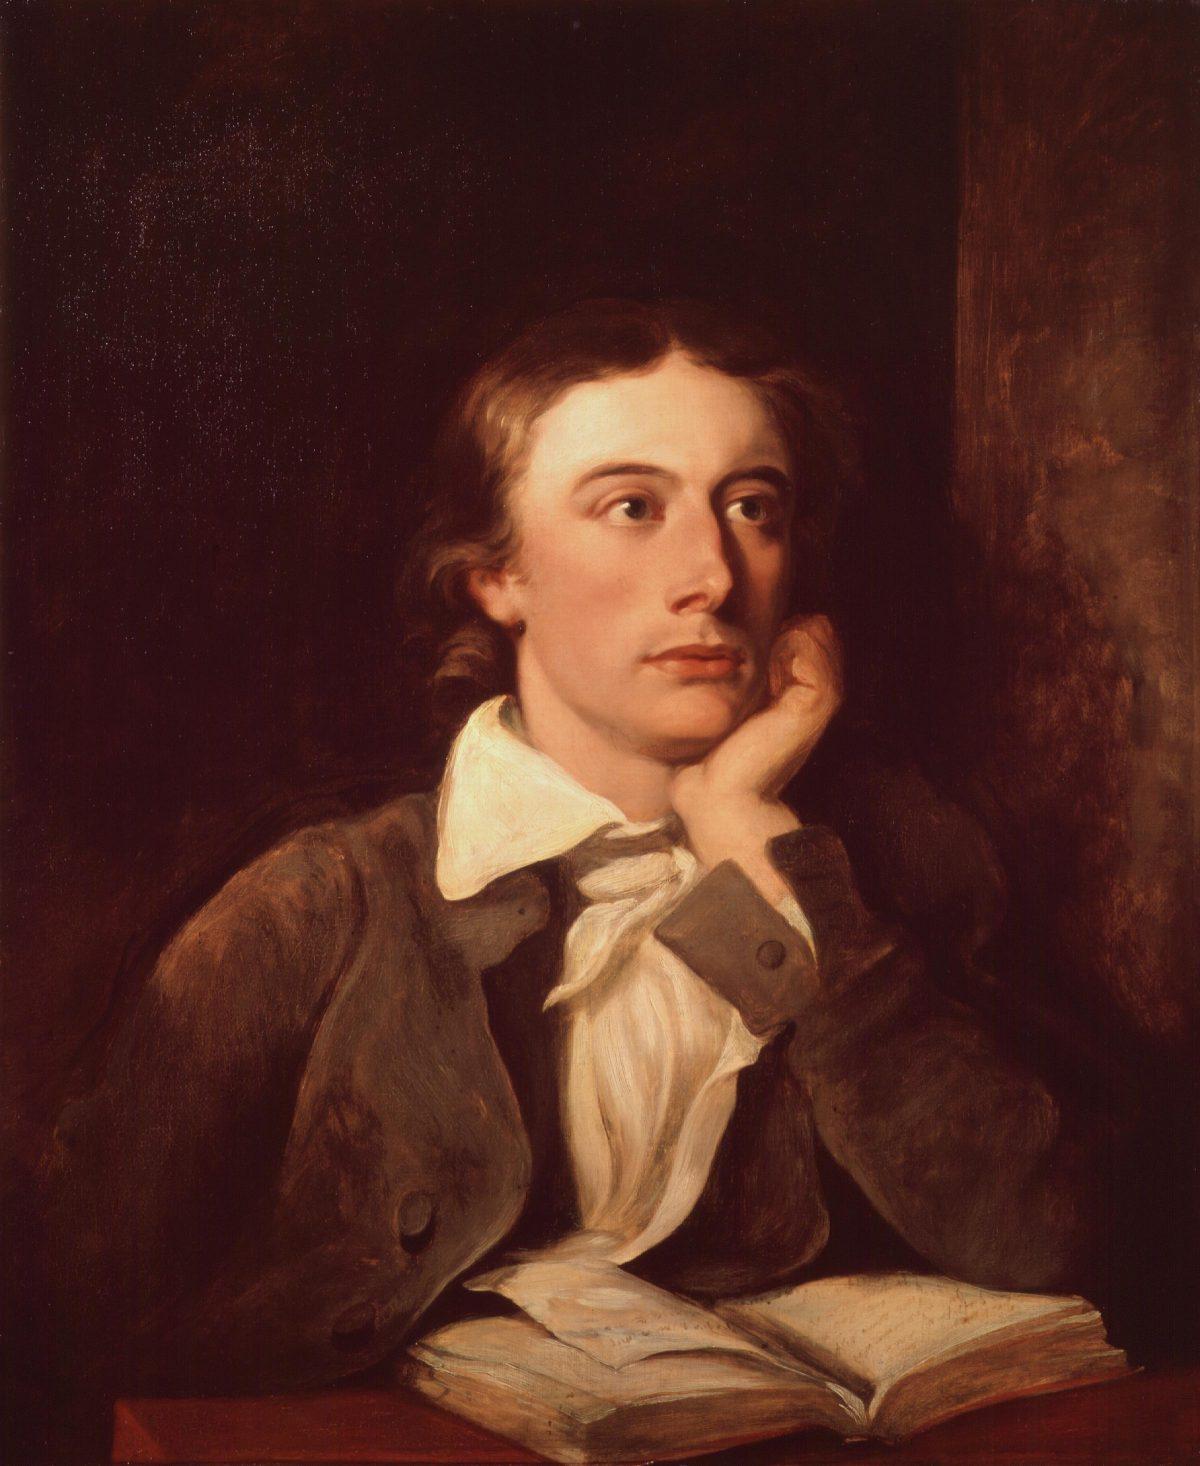 Posthumous portrait of John Keats by William Hilton. National Portrait Gallery, London. (Public Domain)